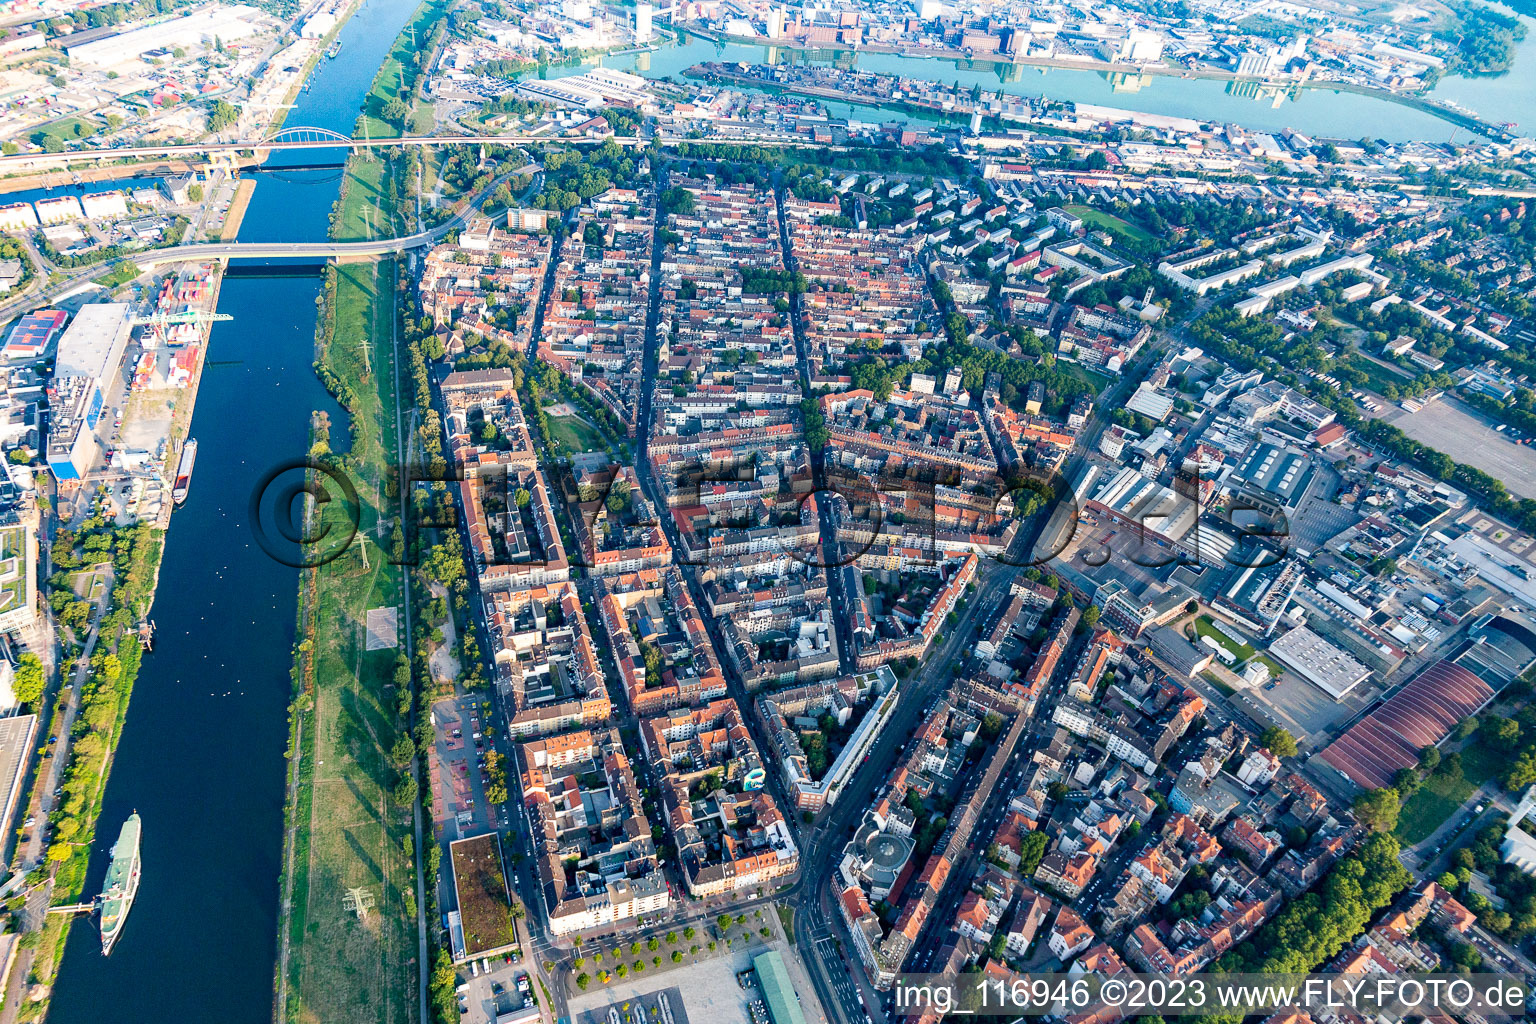 Luftbild von Stadtteil Neckarstadt-West zwischen Altrhein und Neckar in Mannheim im Ortsteil Neckarstadt-Ost im Bundesland Baden-Württemberg, Deutschland